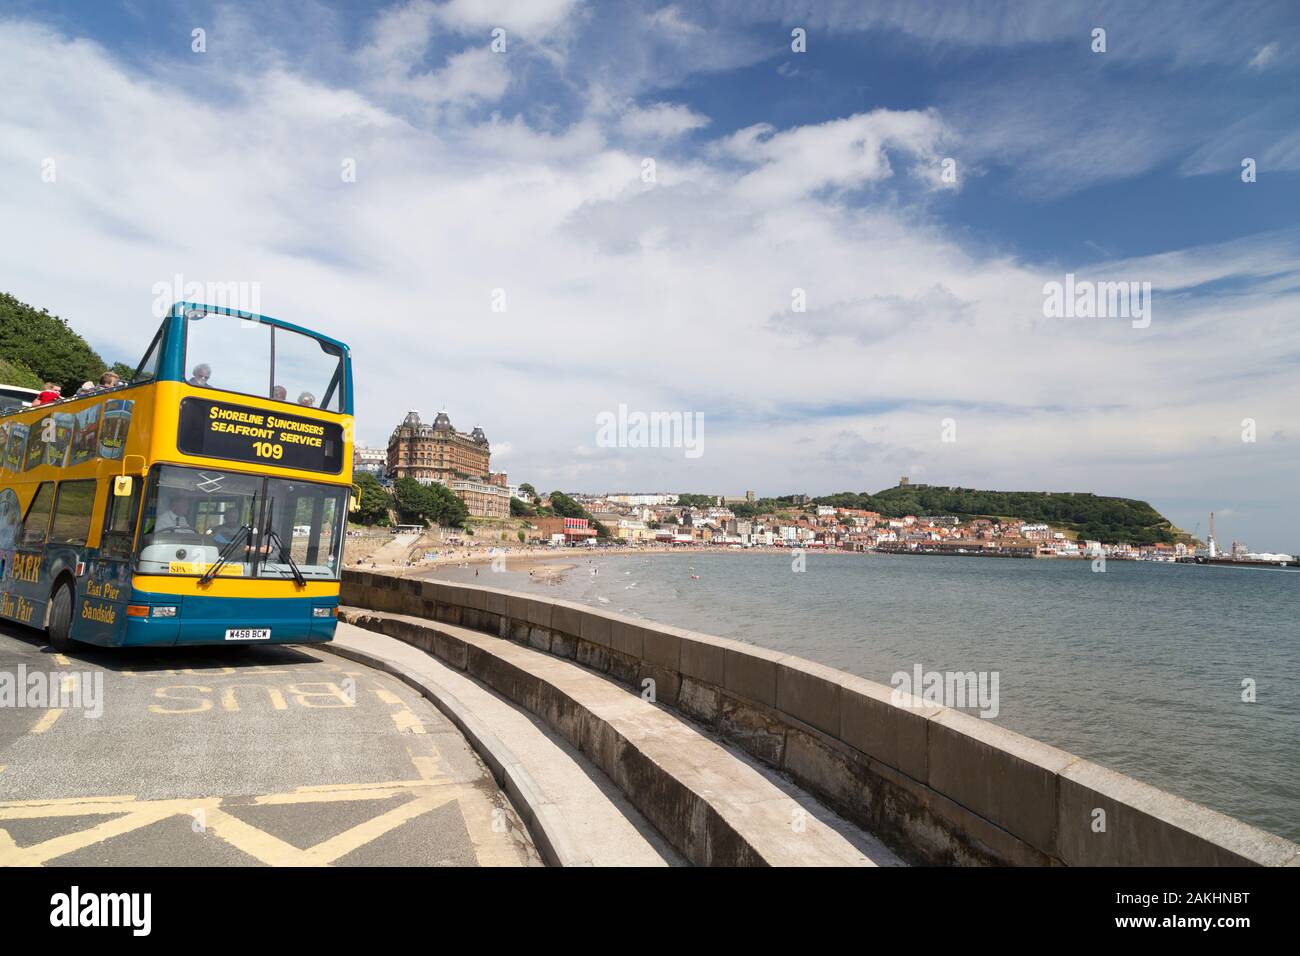 Open topped tourist bus on Scarborough promenade. Stock Photo